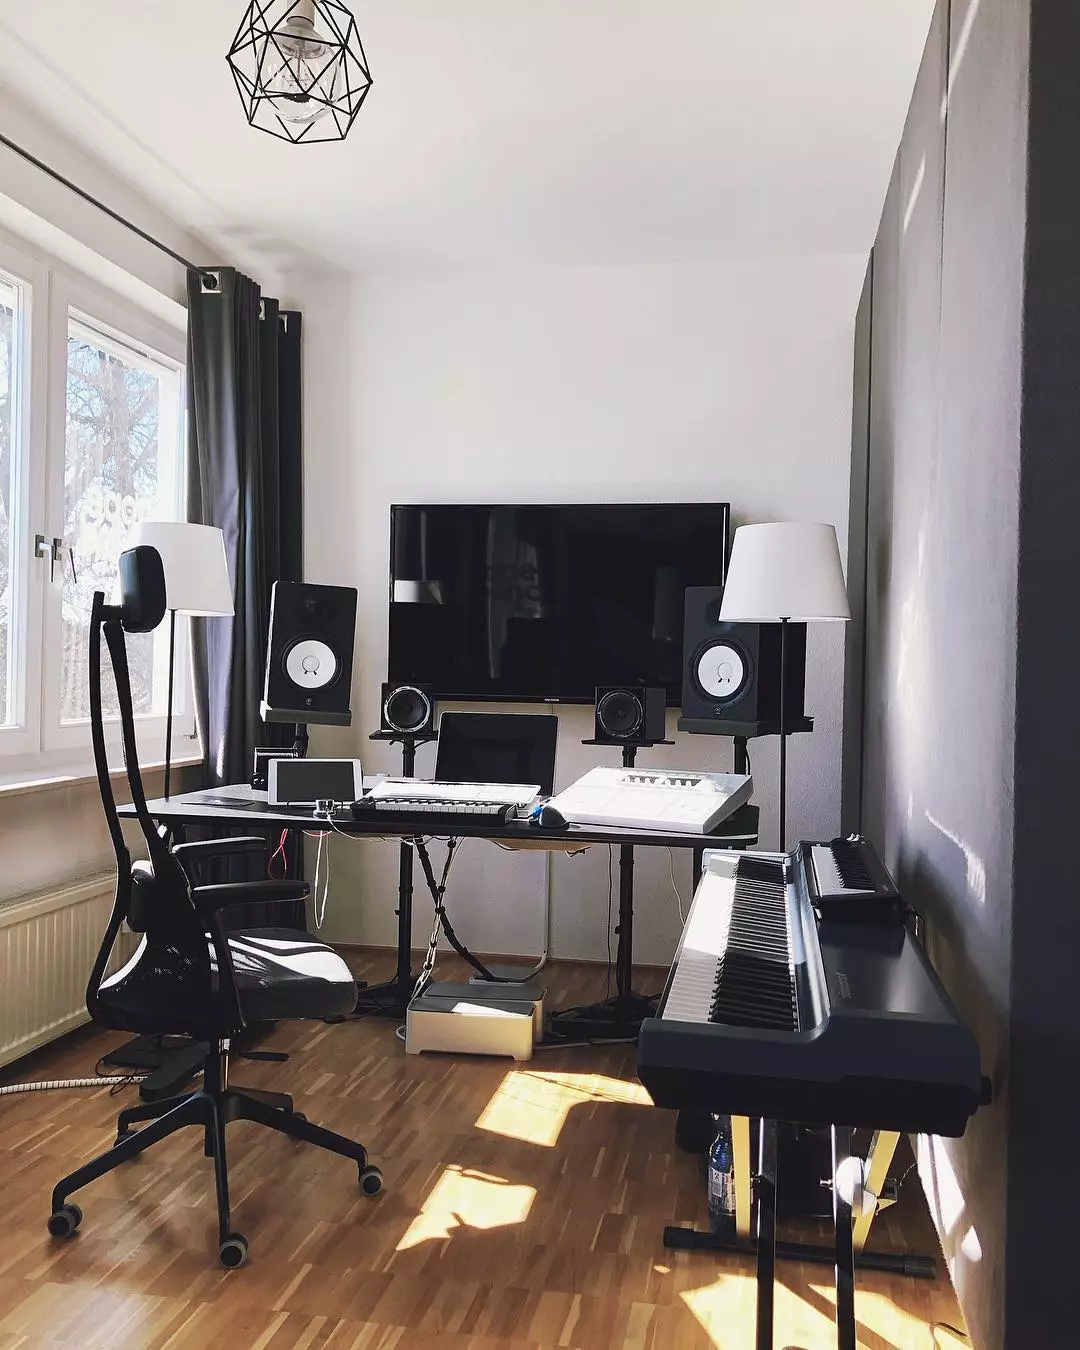 How to Transform a Spare Room into a Home Music Studio